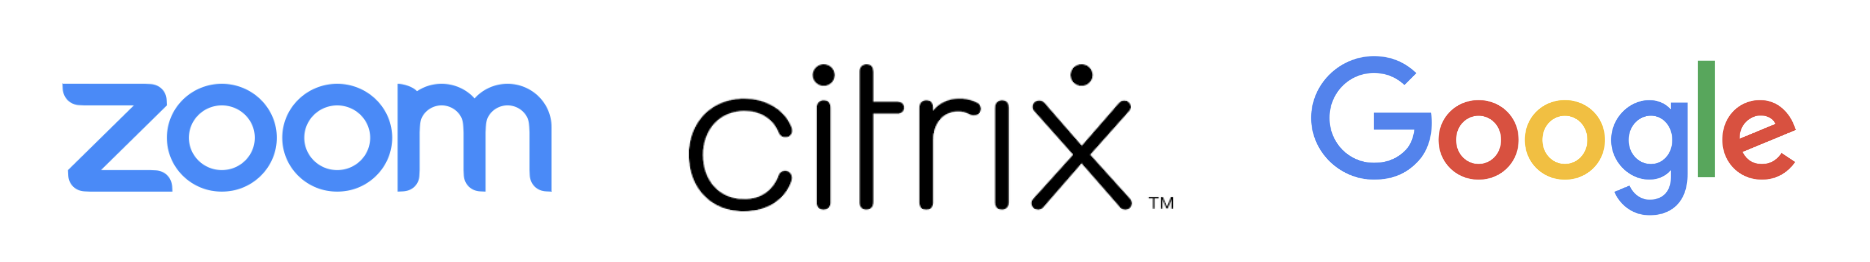 Logo Zoom, logo Citrix a logo Google, které jsou vedle sebe